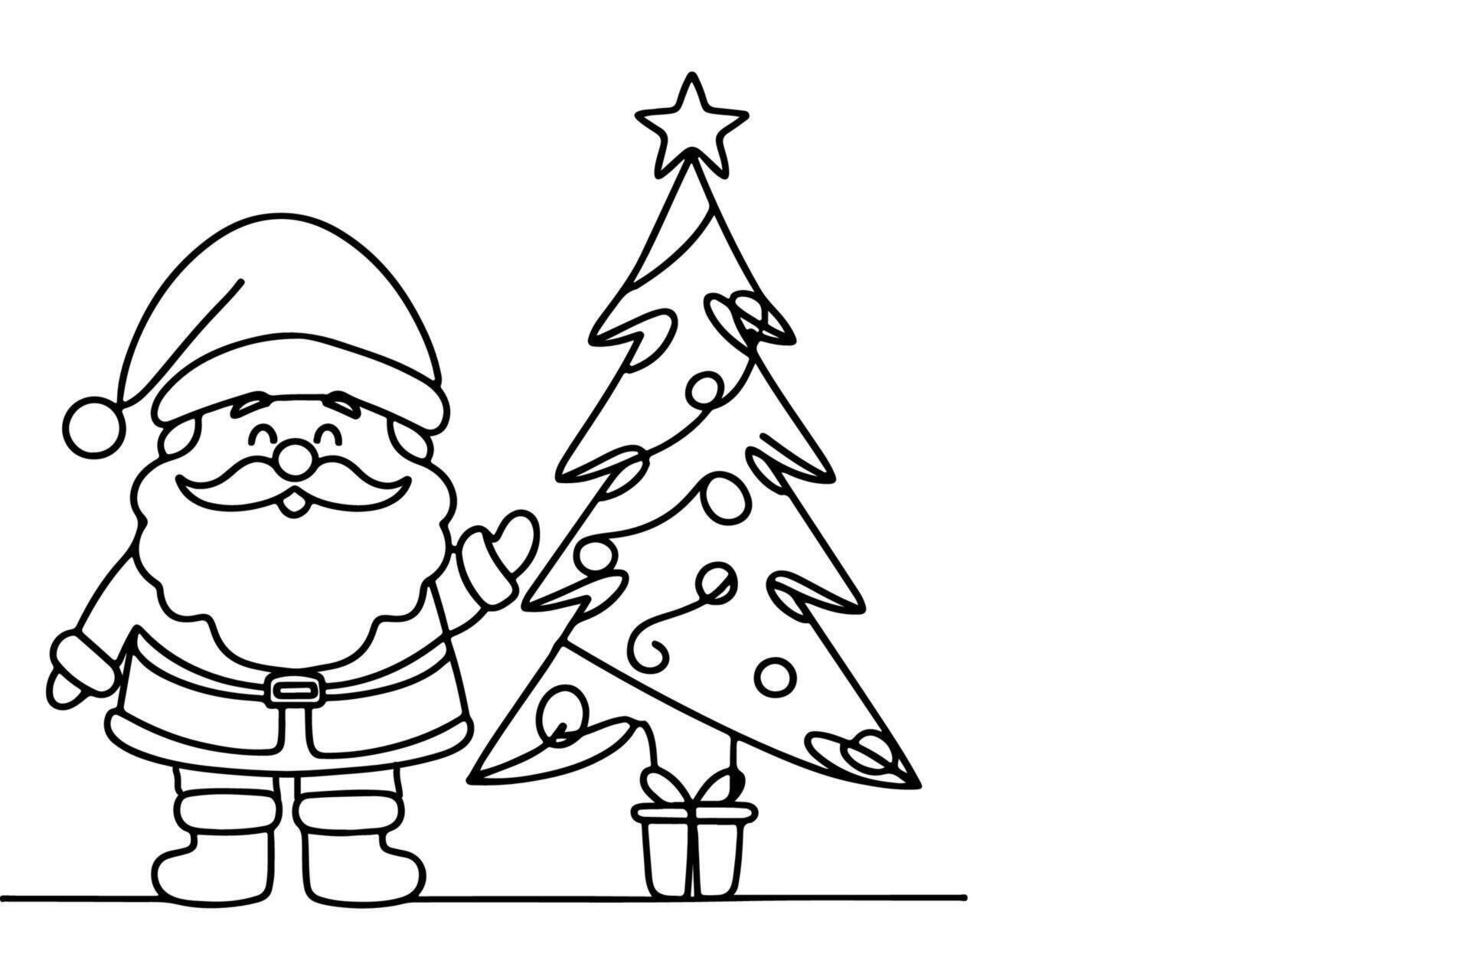 ai generato ne continuo nero linea arte disegno di allegro Natale albero. mano disegnato di Santa Claus schema scarabocchio vettore illustrazione